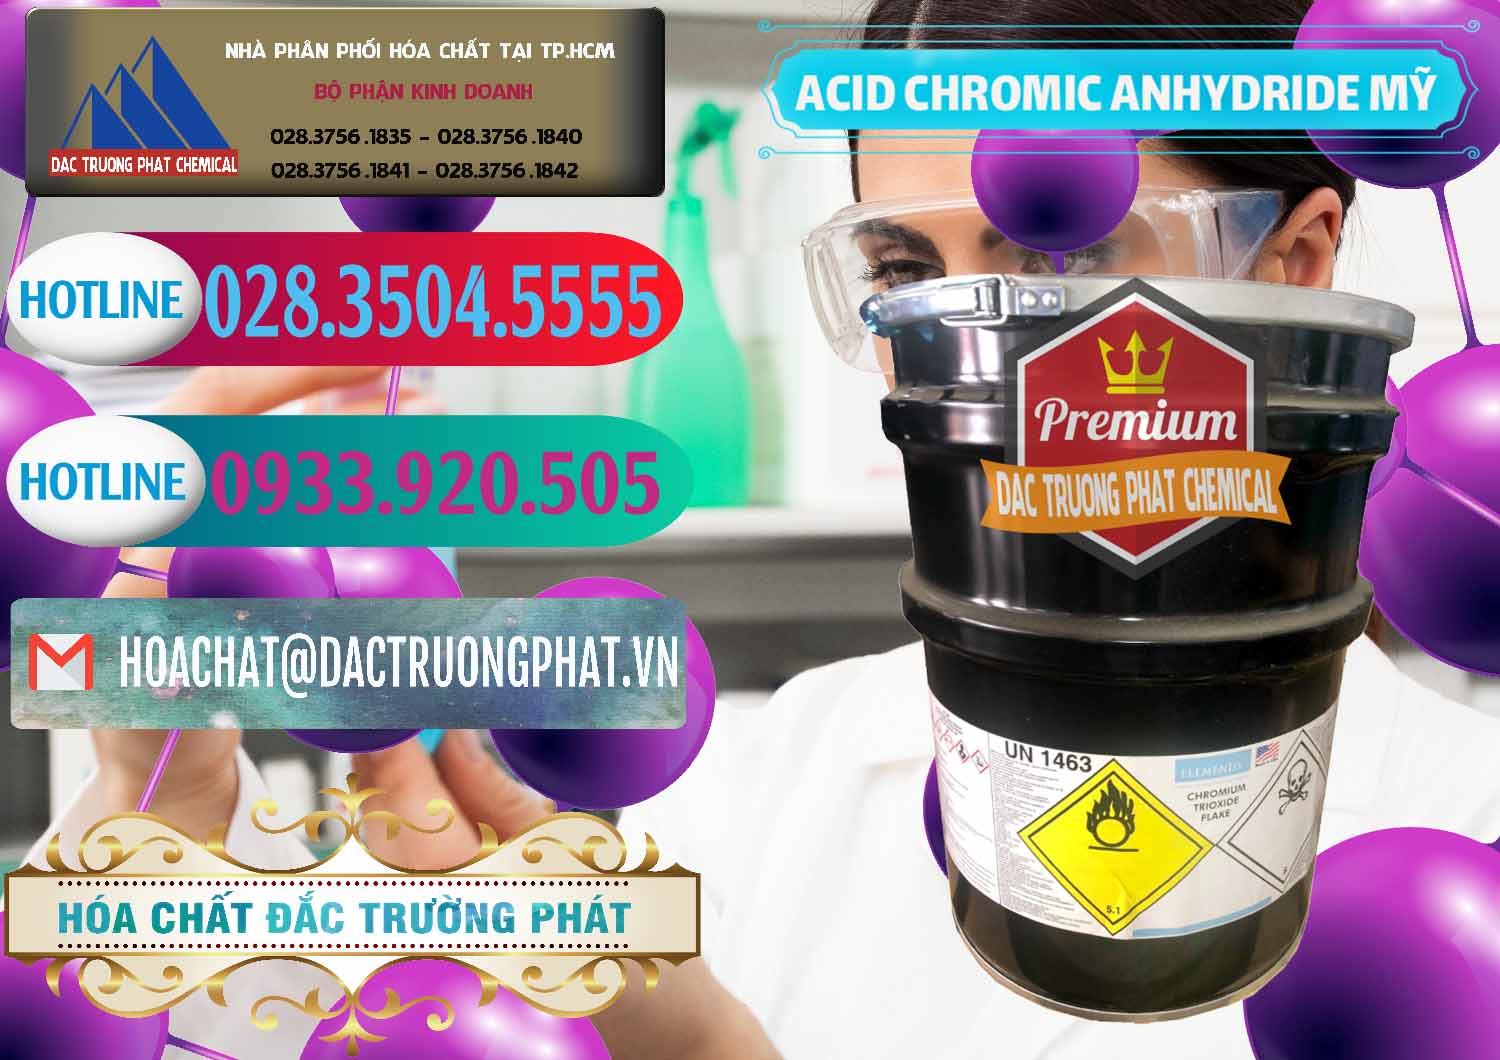 Chuyên nhập khẩu ( bán ) Acid Chromic Anhydride - Cromic CRO3 USA Mỹ - 0364 - Nơi chuyên cung ứng ( phân phối ) hóa chất tại TP.HCM - truongphat.vn